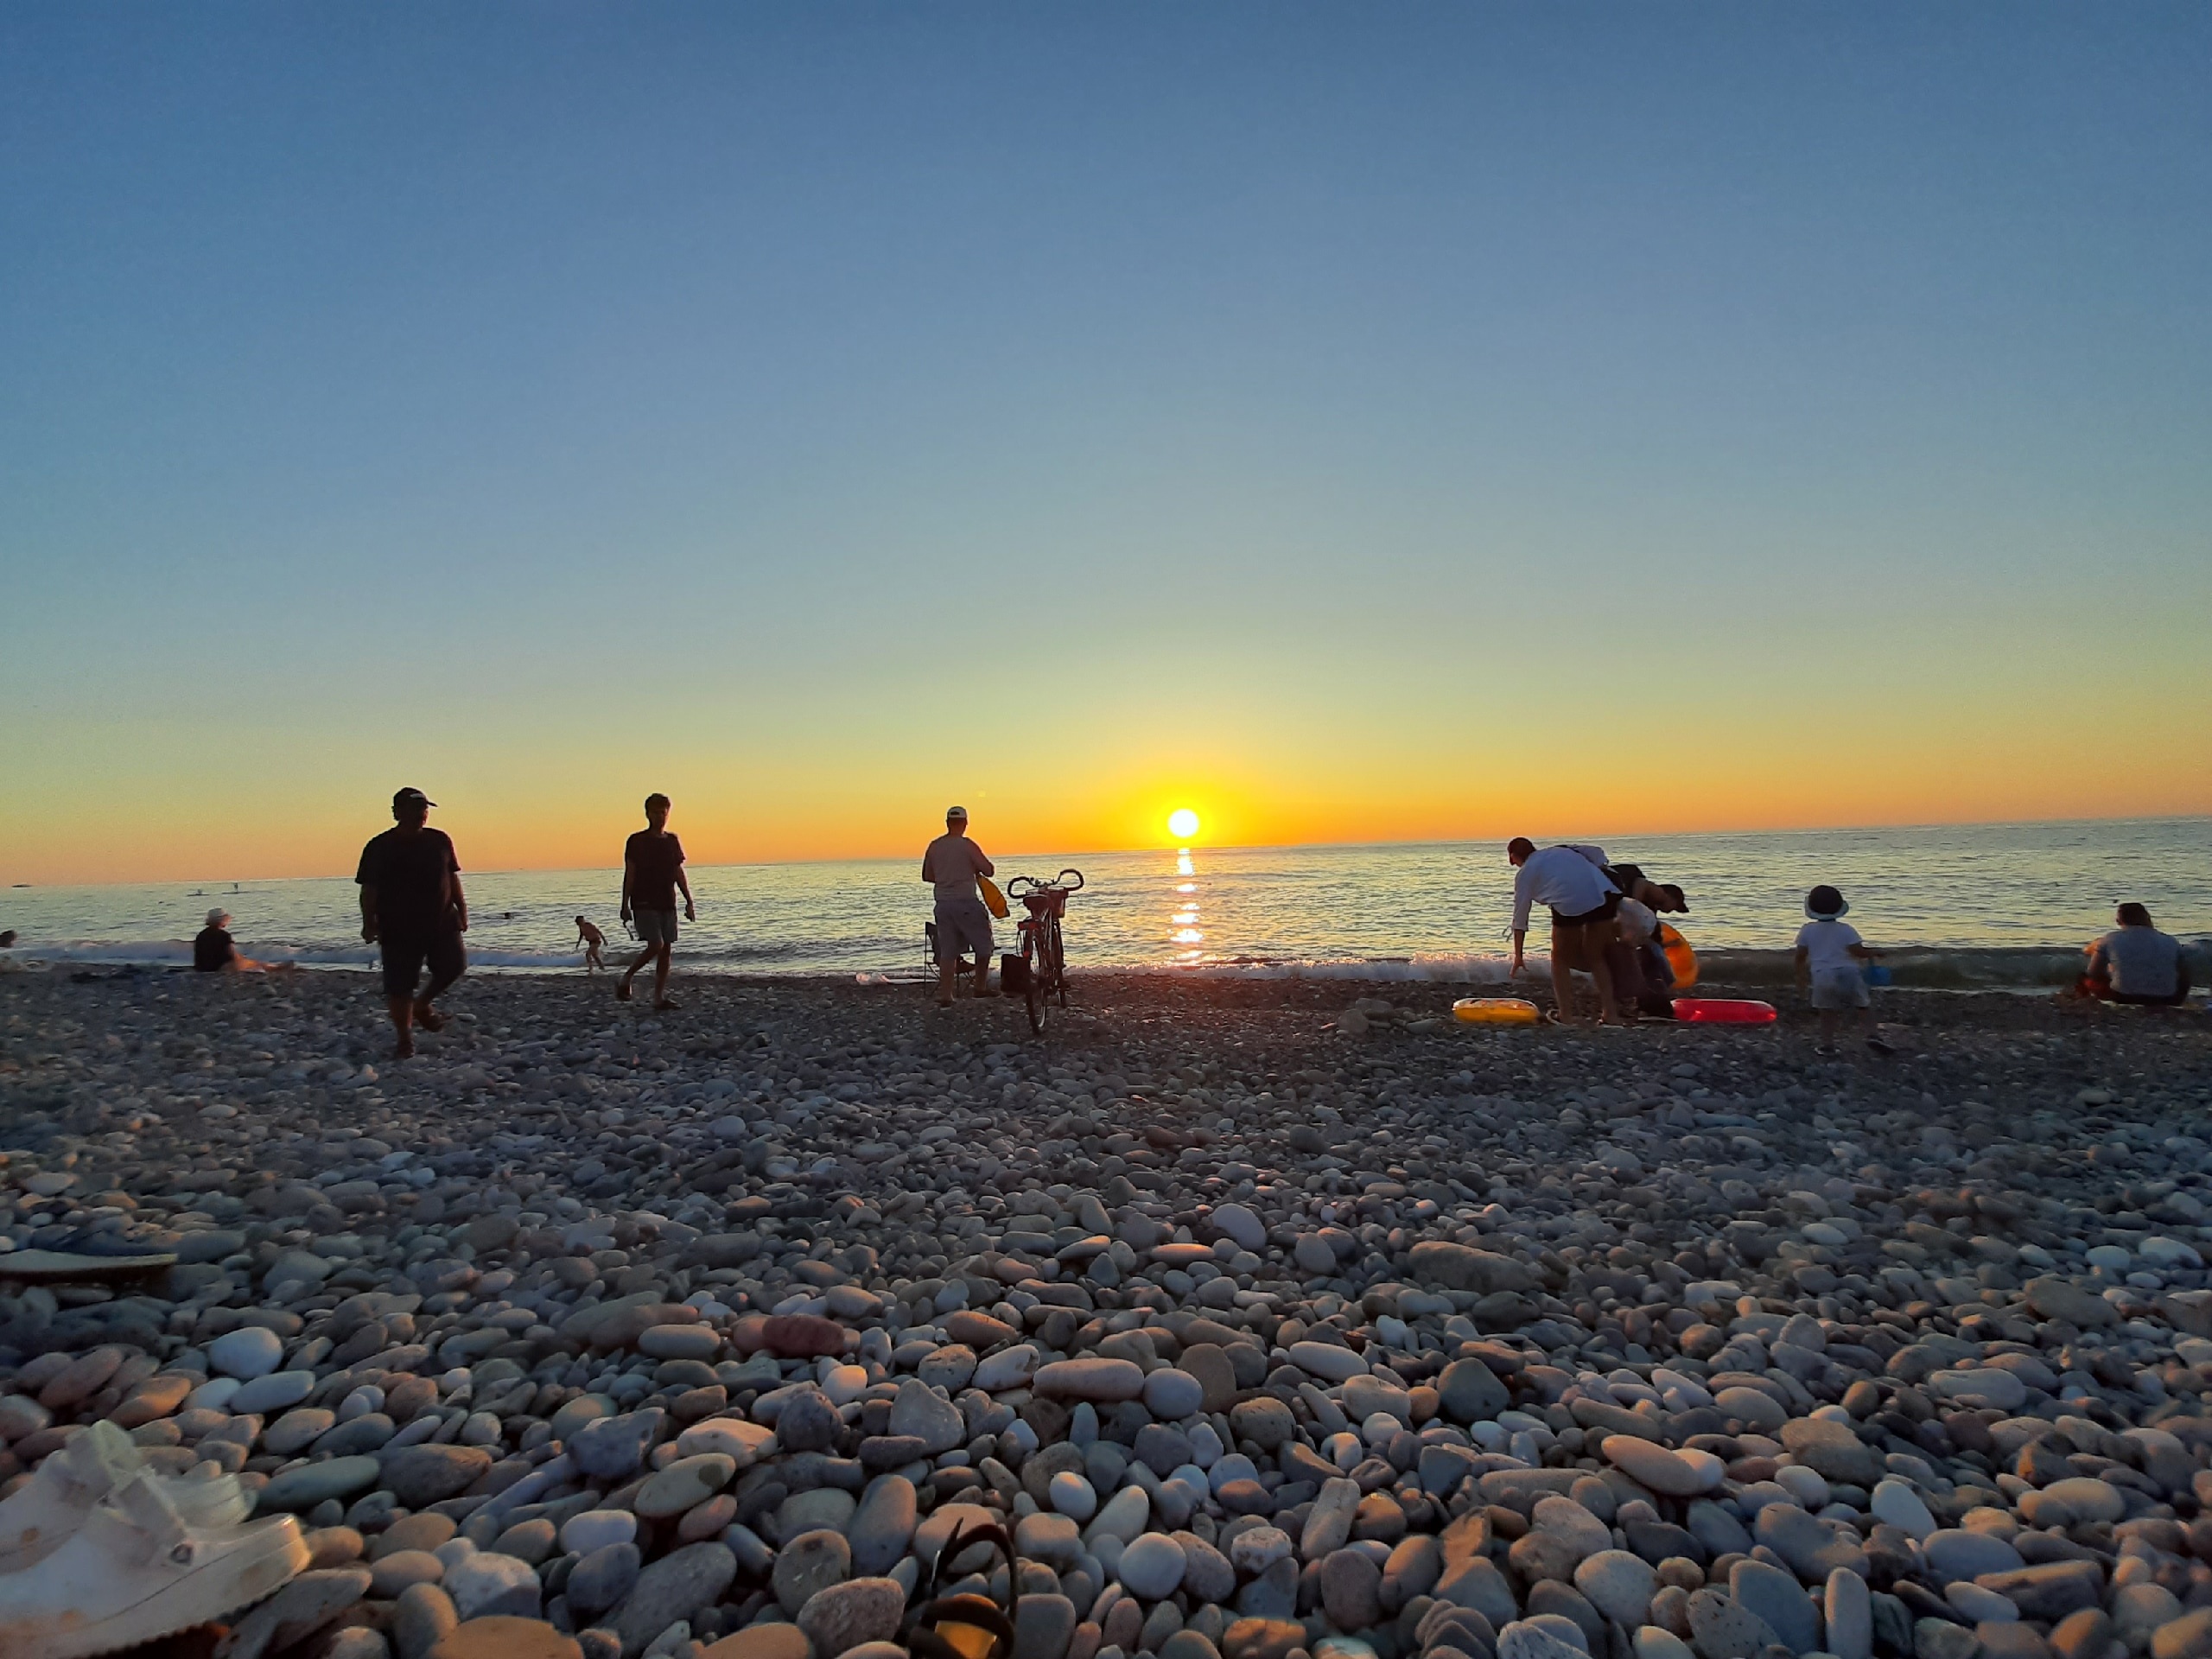 "Купаться невозможно, сидим на берегу": черноморский пляж преподнес гадкий сюрприз отдыхающим